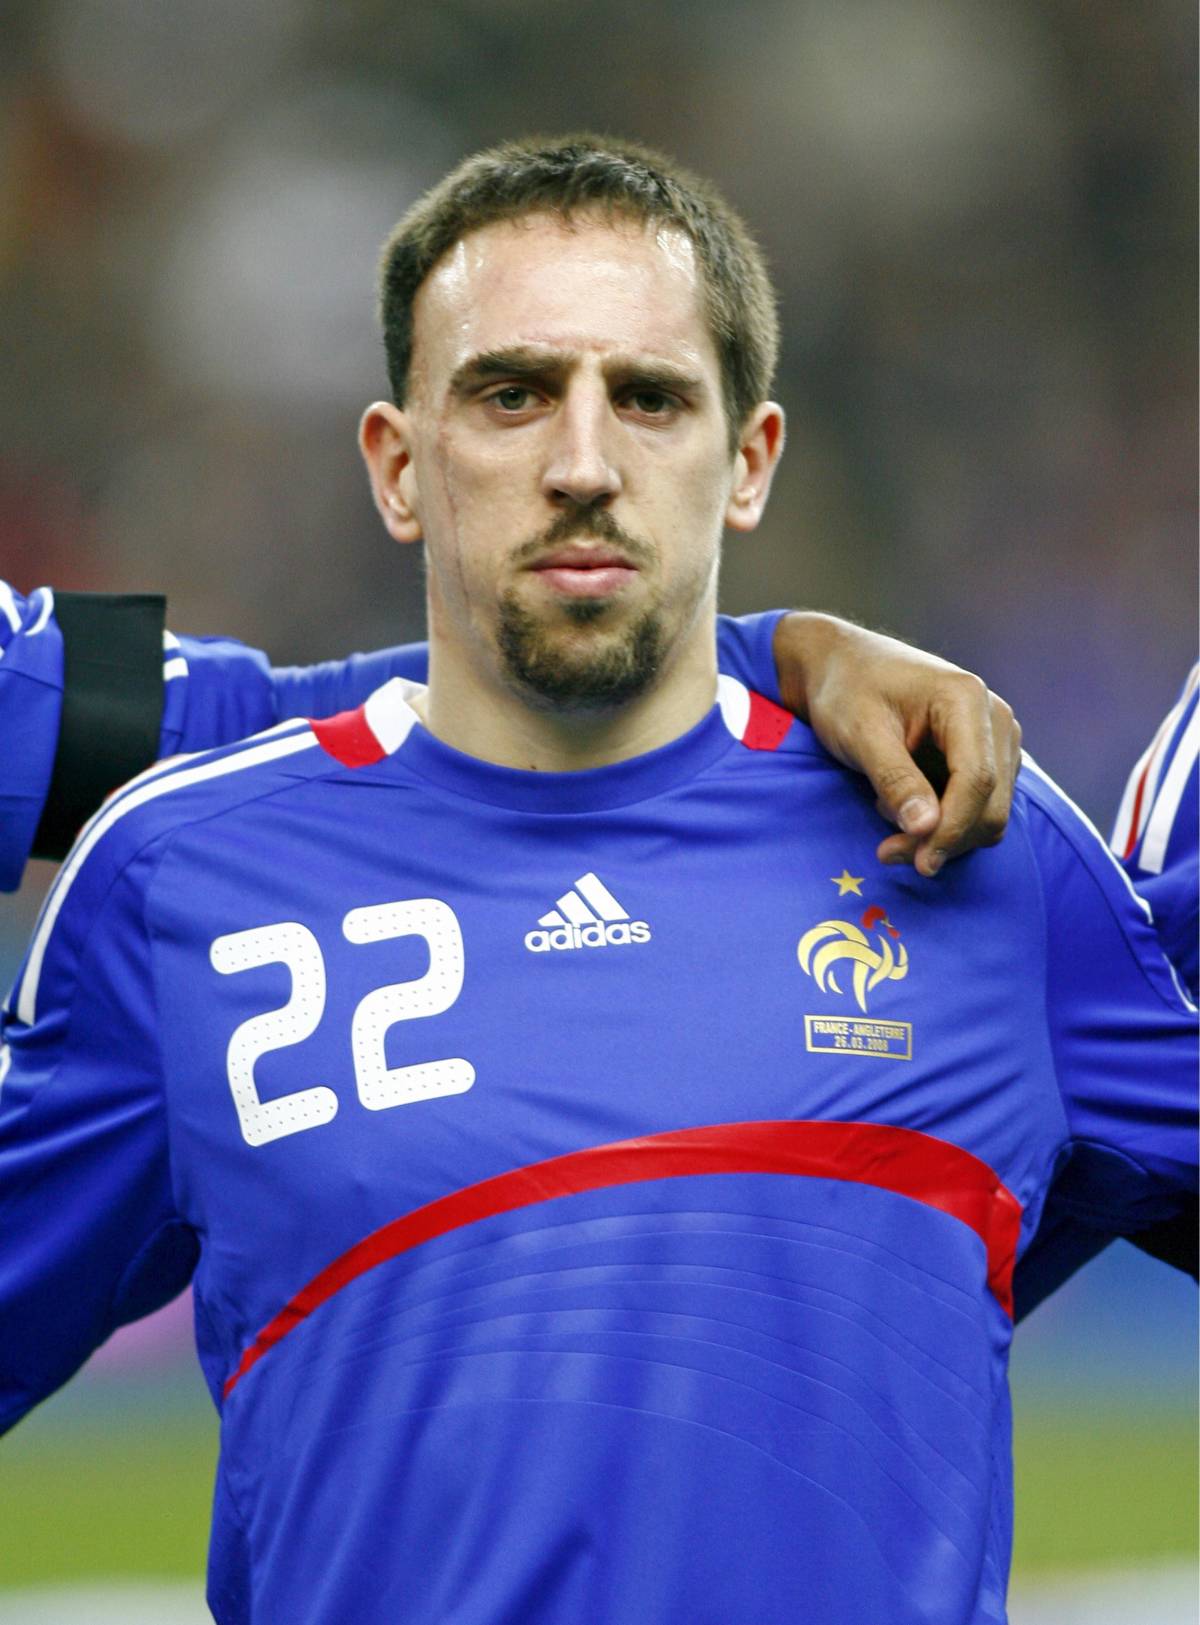 "Devo smettere di giocare": il commovente addio di Ribery ai tifosi